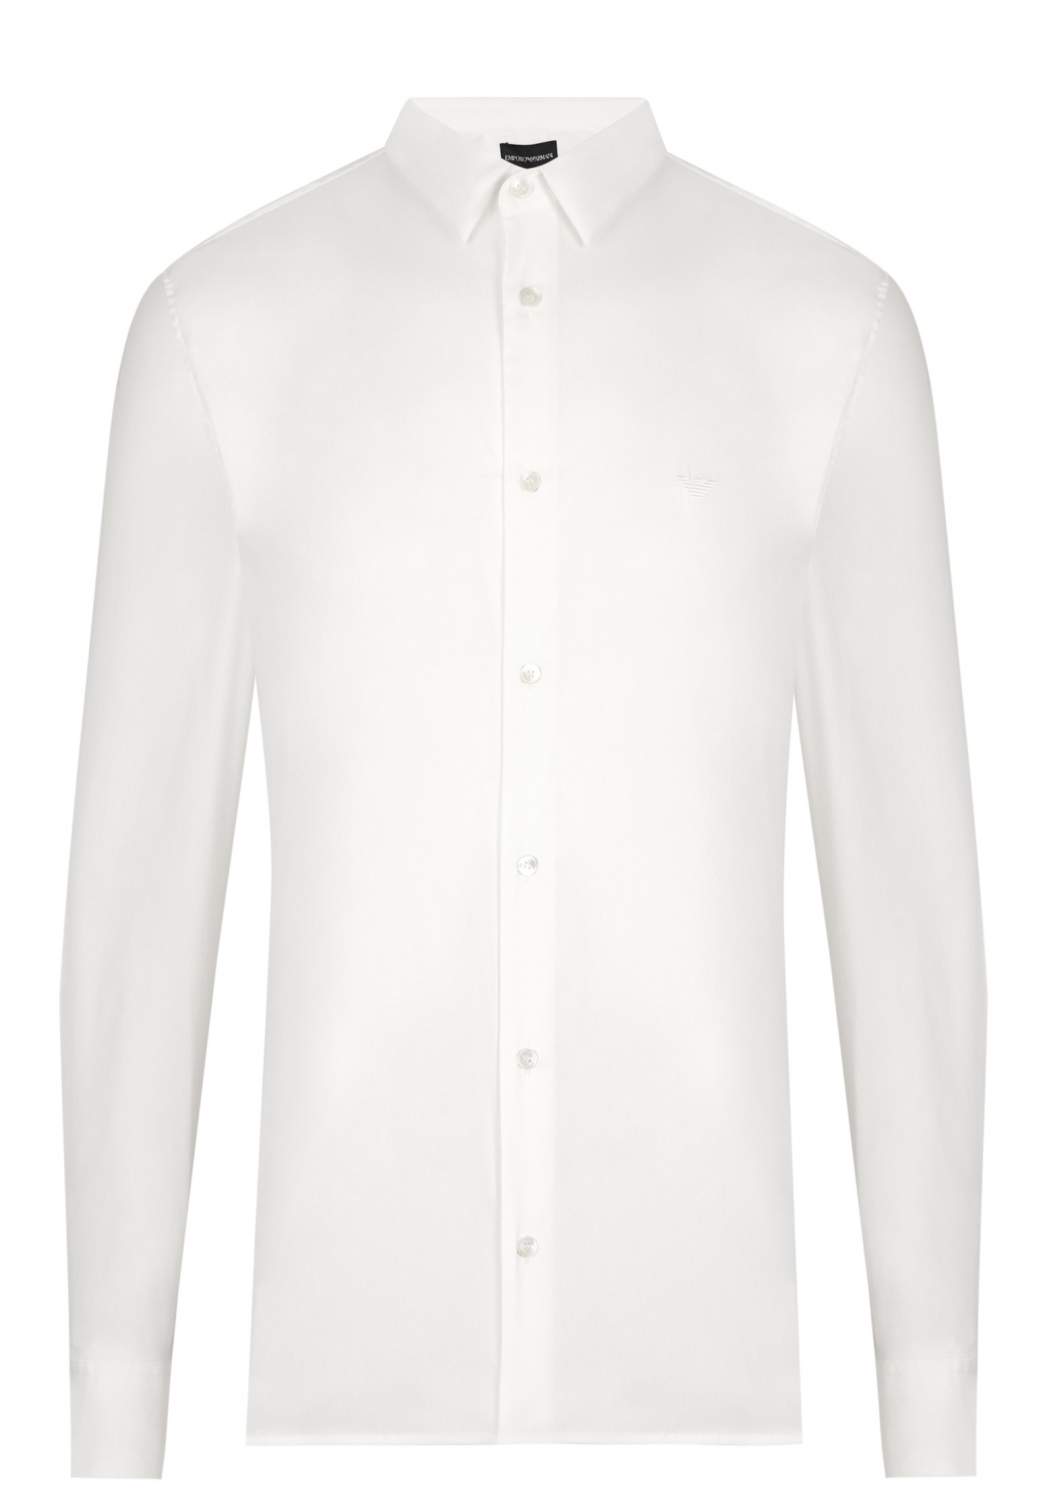 Рубашка мужская Emporio Armani 134482 белая S - купить в Москве, цены наМегамаркет